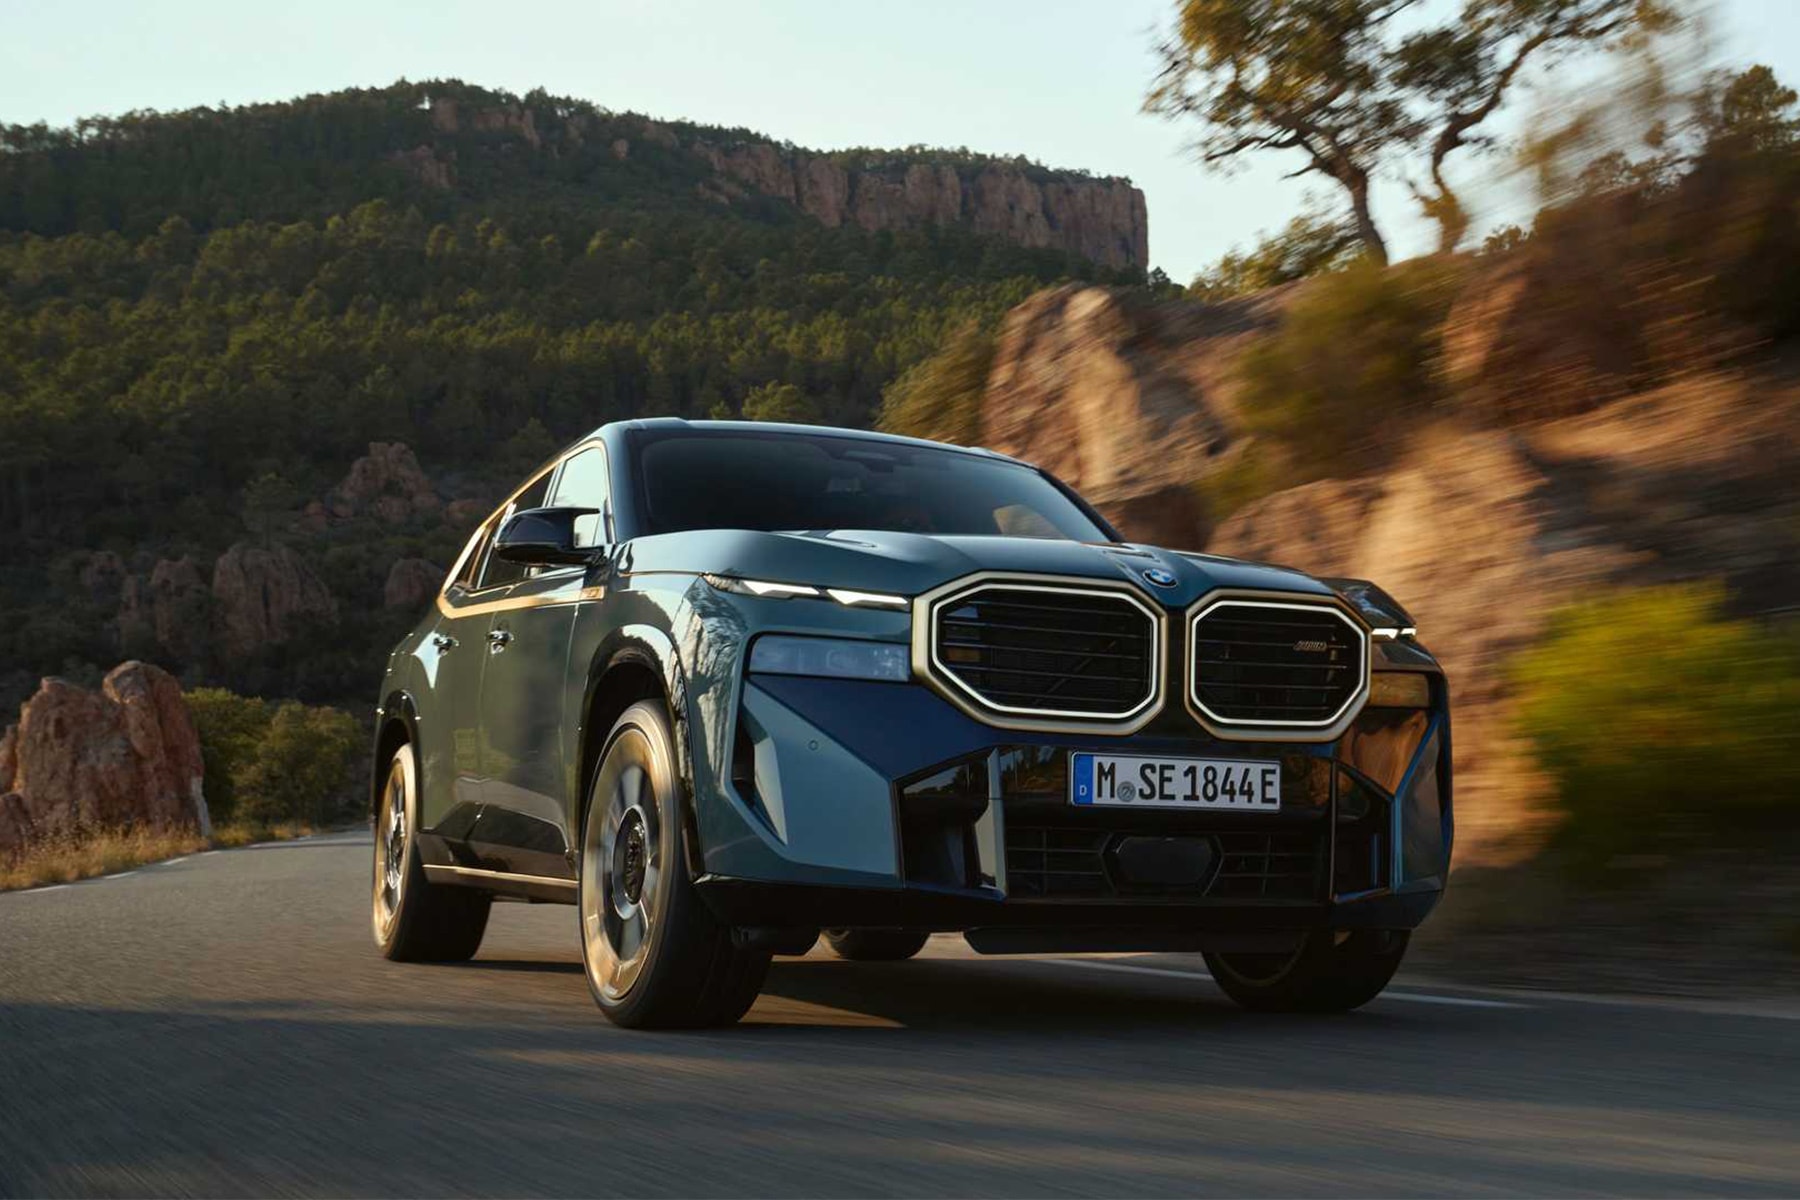 BMW 正式發表 644 匹馬力全新混合動力 SUV 車型 XM